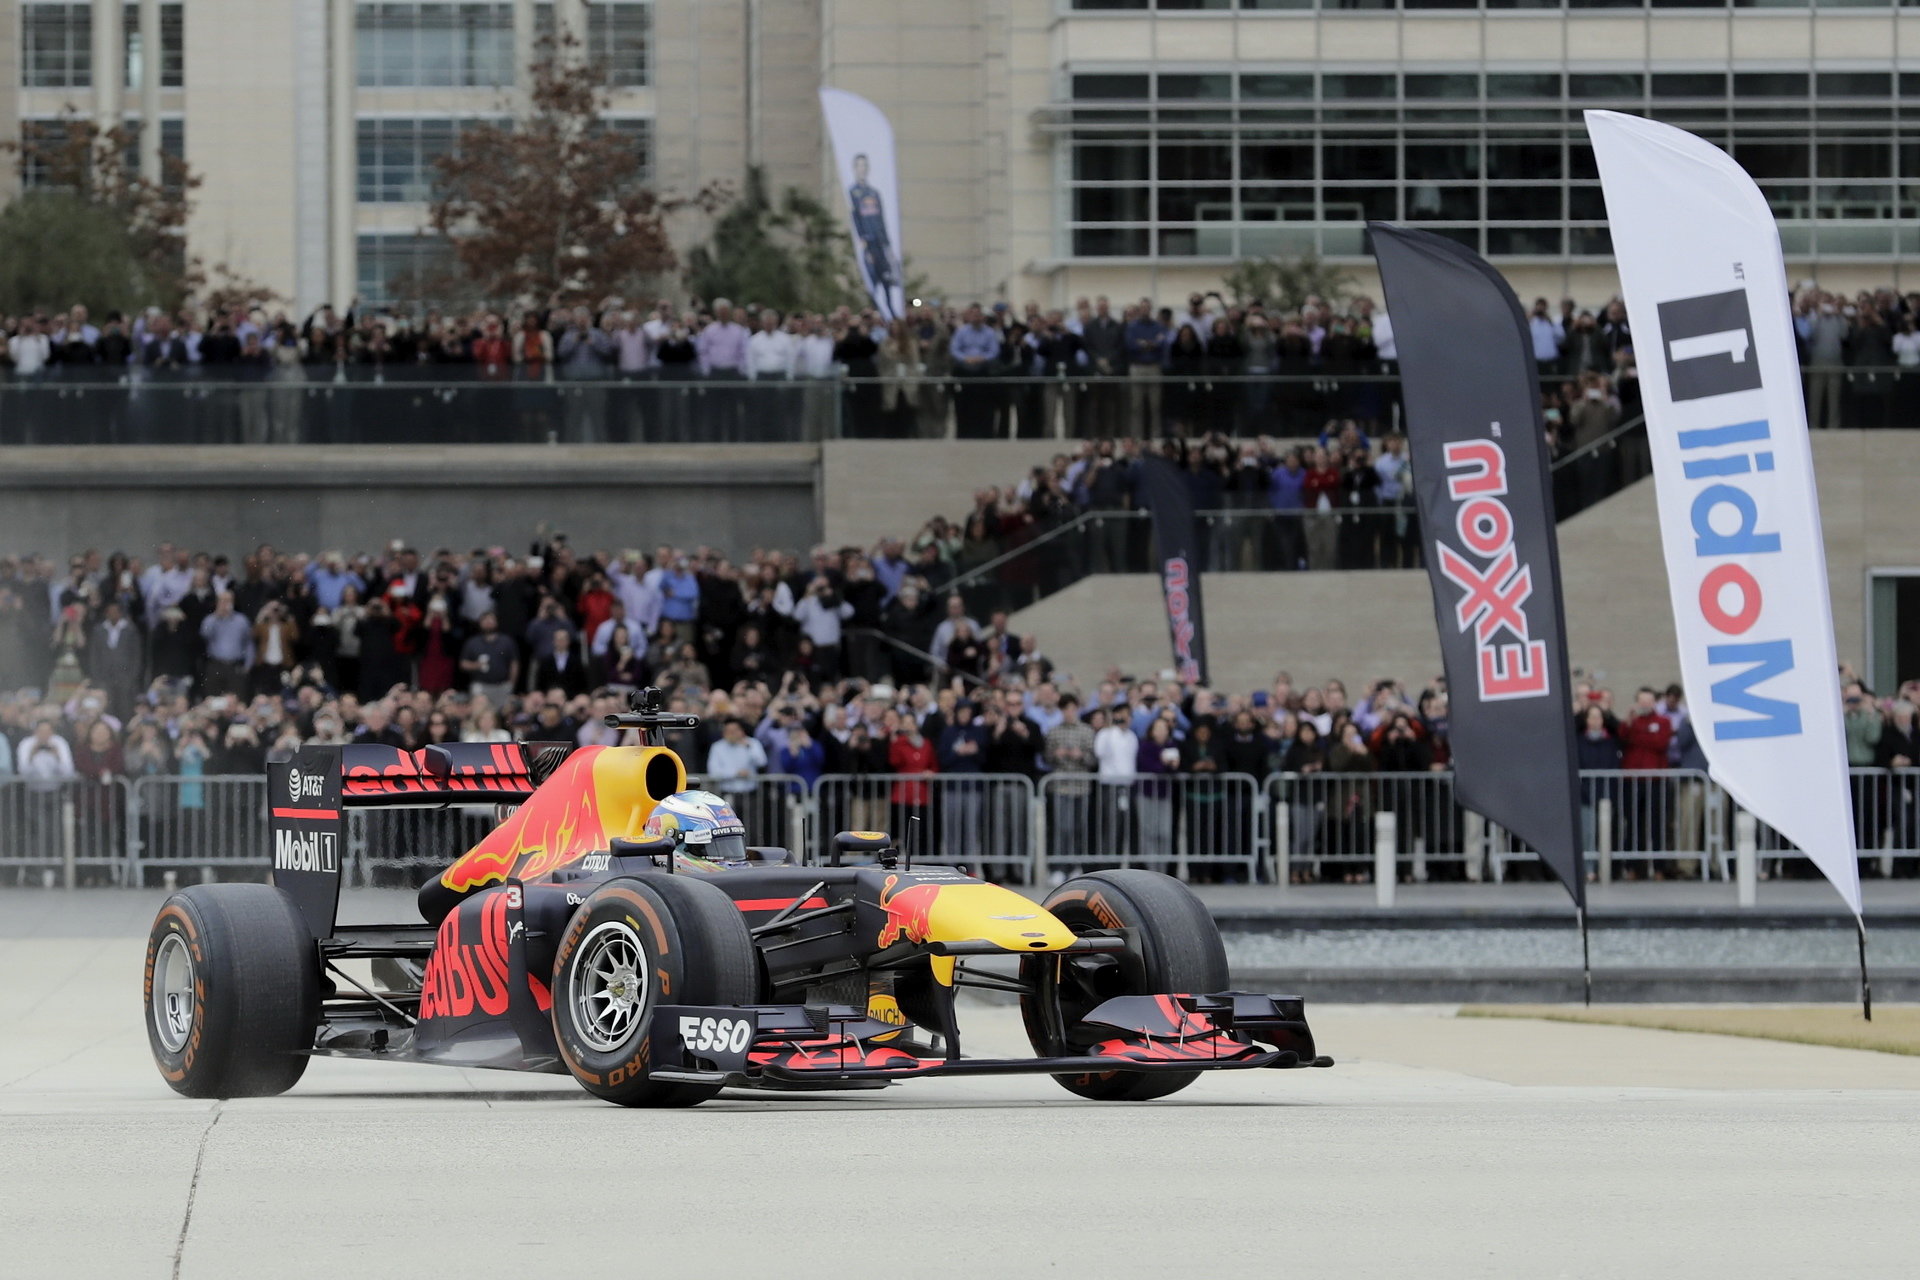 Obliba Daniela Ricciarda stoupá, třeba i díky akcím, jako byla ta v americkém Houstonu